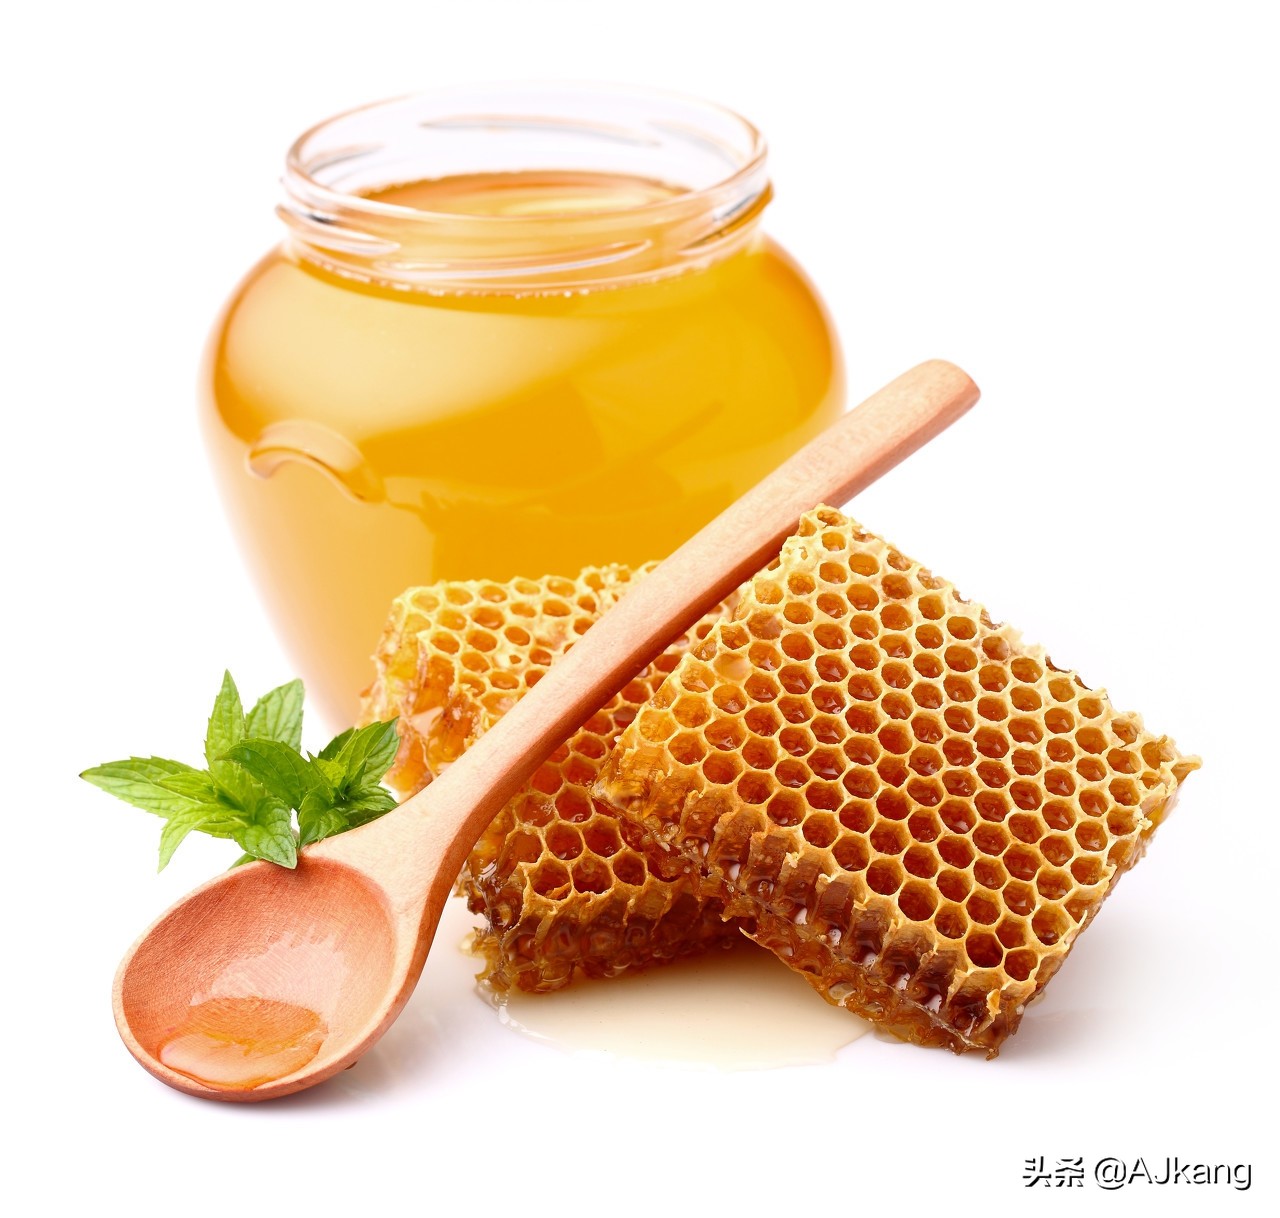 是超级食品？科学家在蜂蜜中发现了新蛋白质，具有抗微生物功效